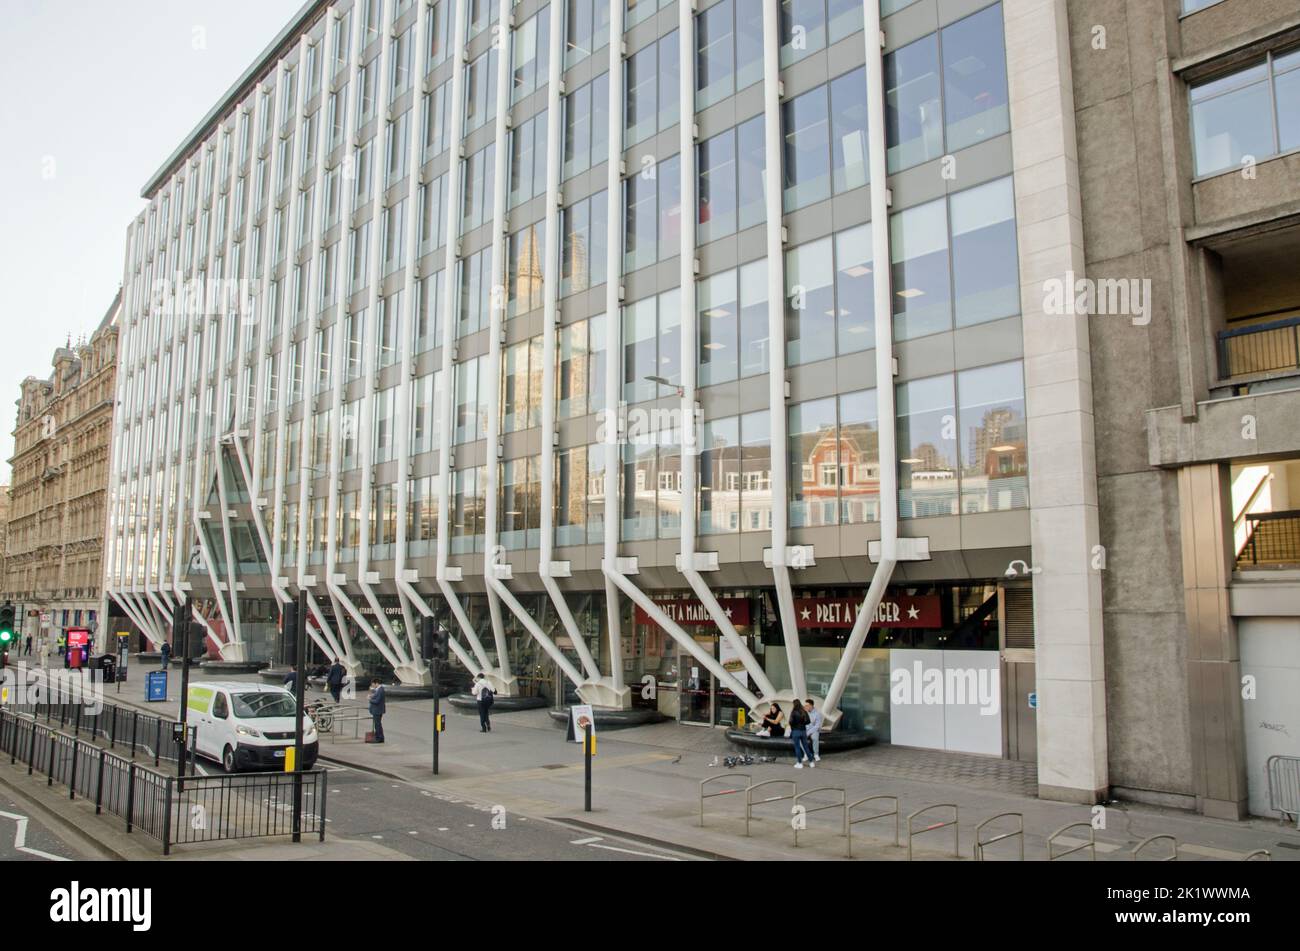 Londres, Reino Unido - 21 de marzo de 2022: Vista exterior del bloque de oficinas de Fleet Place House en High Holborn, en la ciudad de Londres, en una tarde de primavera. Dsig Foto de stock